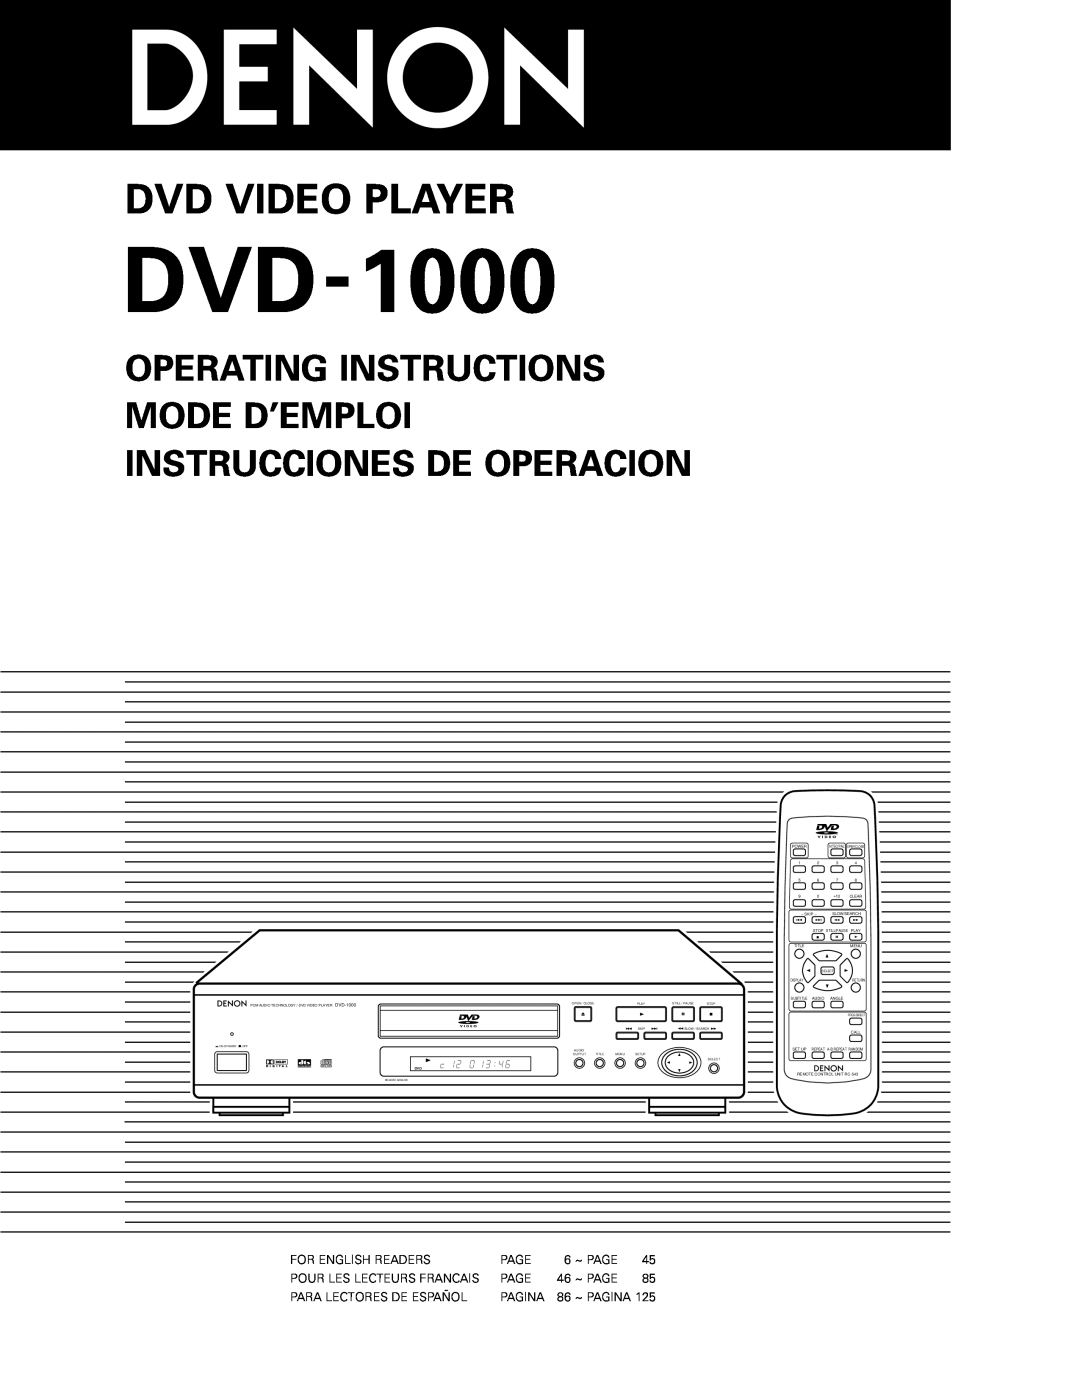 Denon DVD-1000 manual Operating Instructions Mode D’Emploi Instrucciones De Operacion, Dvd Video Player 